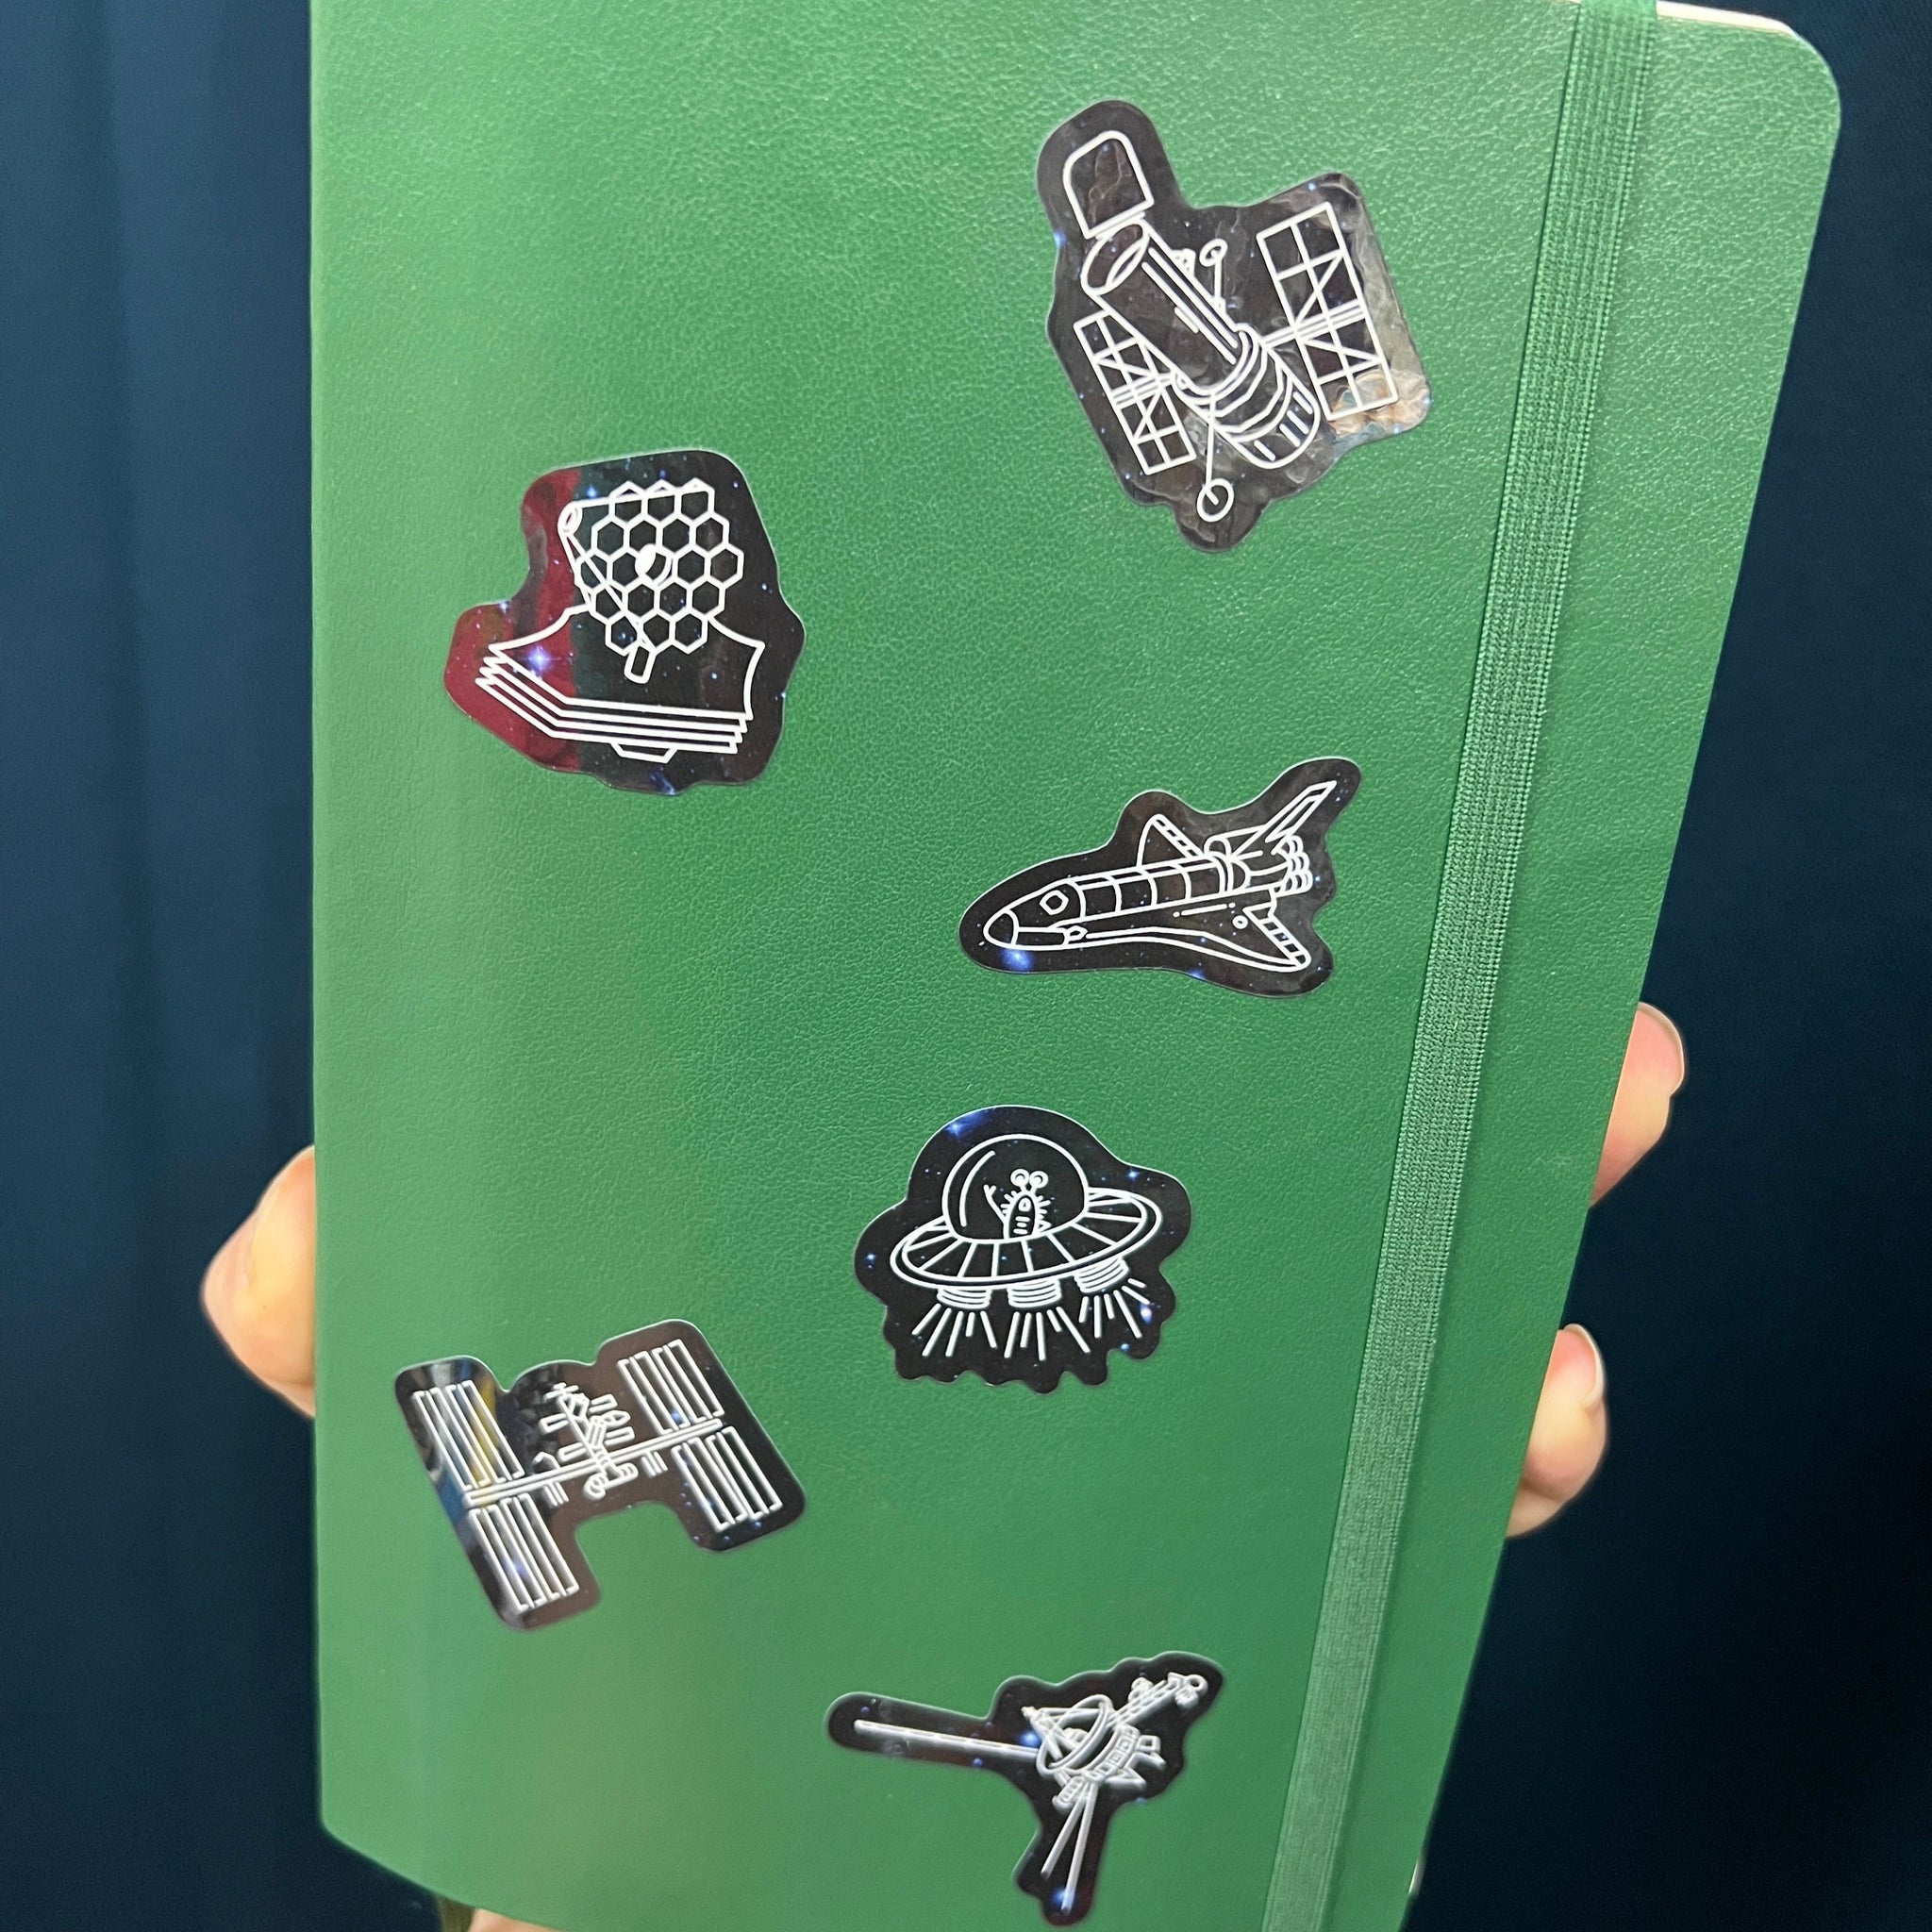 Spacecraft Sticker Pack